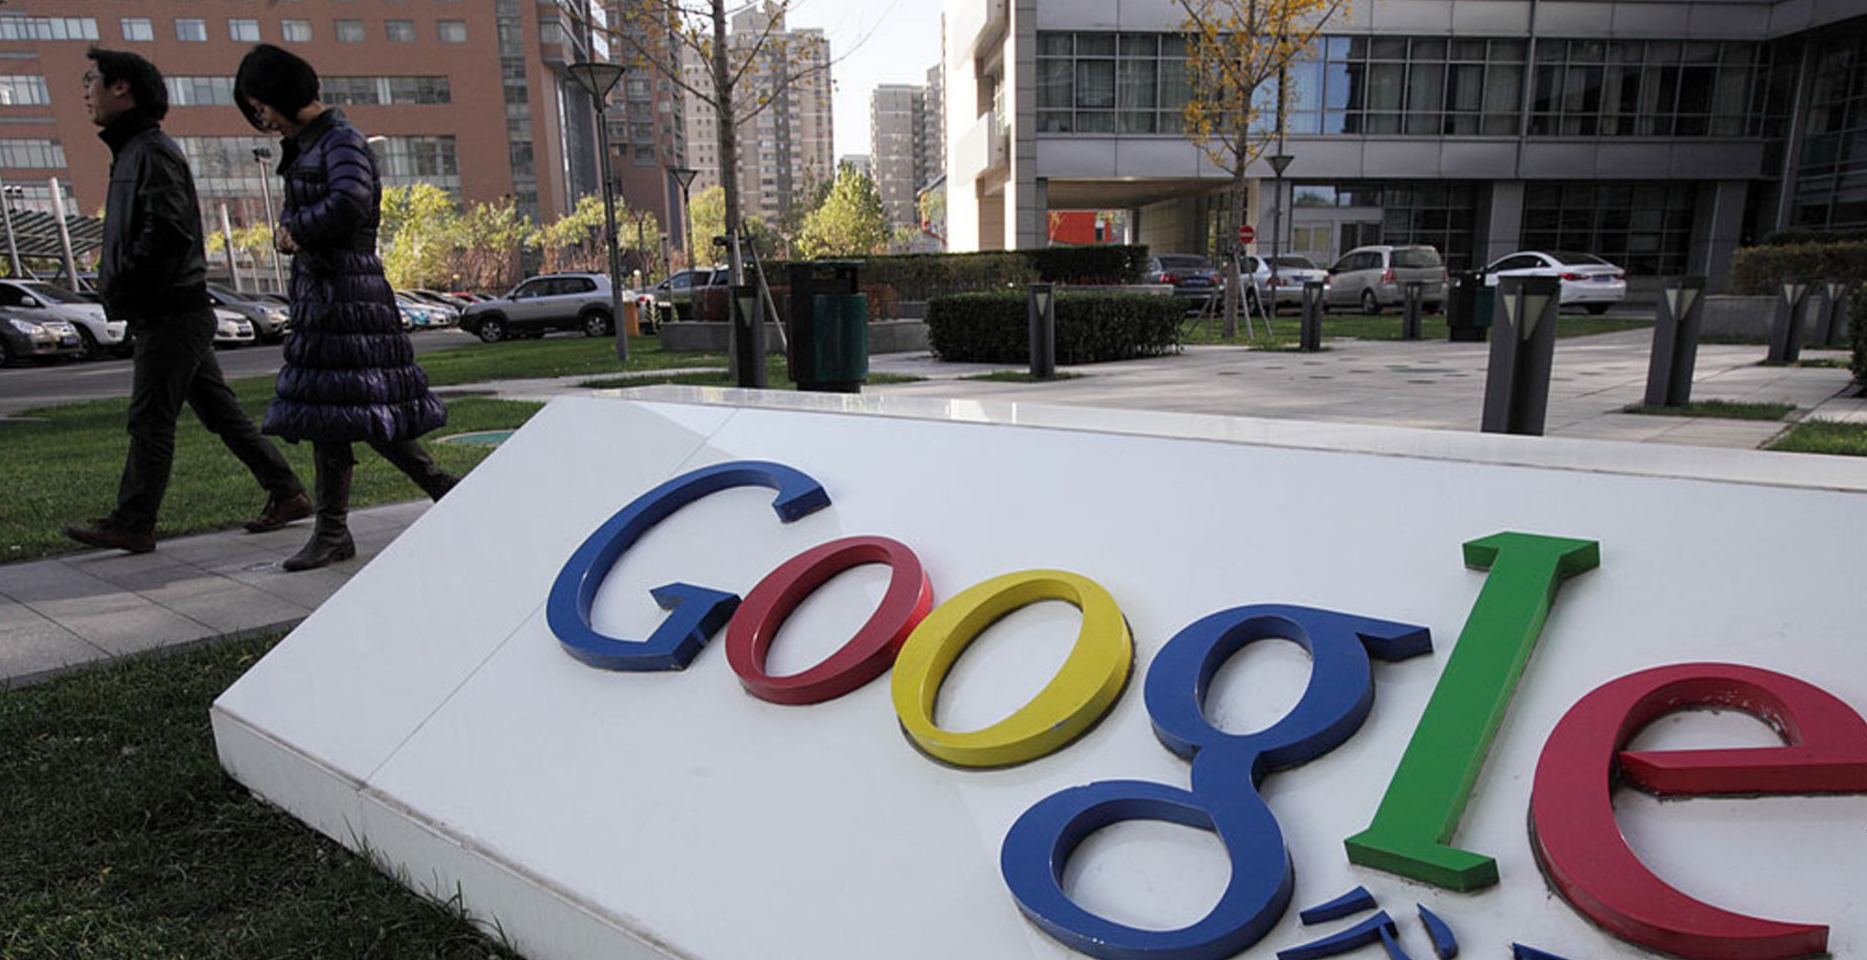 证券日报:谷歌或重返中国的报道不实